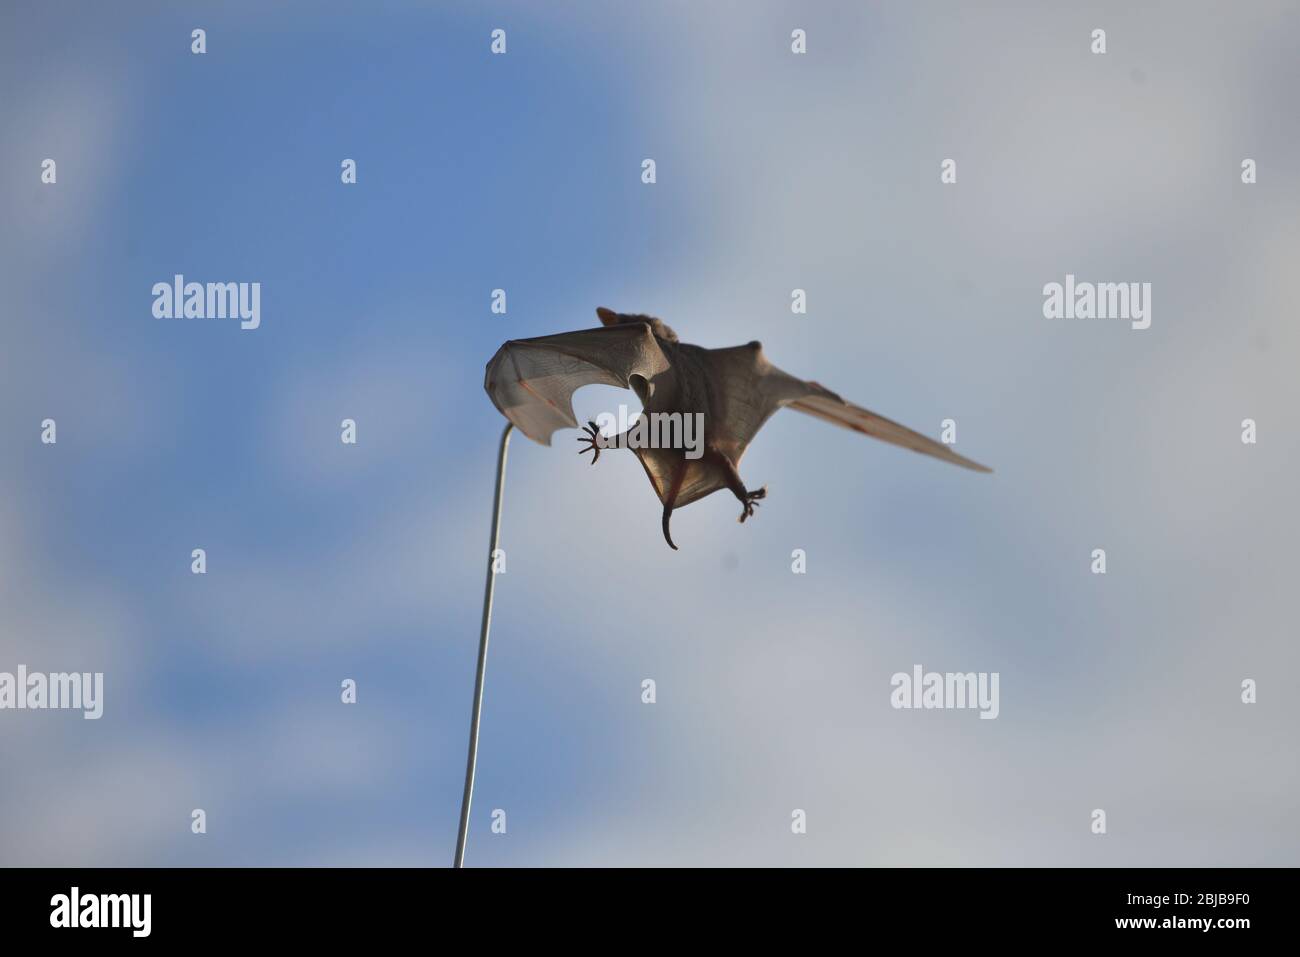 Chauve-souris coincée sur une antenne 4x4, Mara Triangle, Kenya Banque D'Images